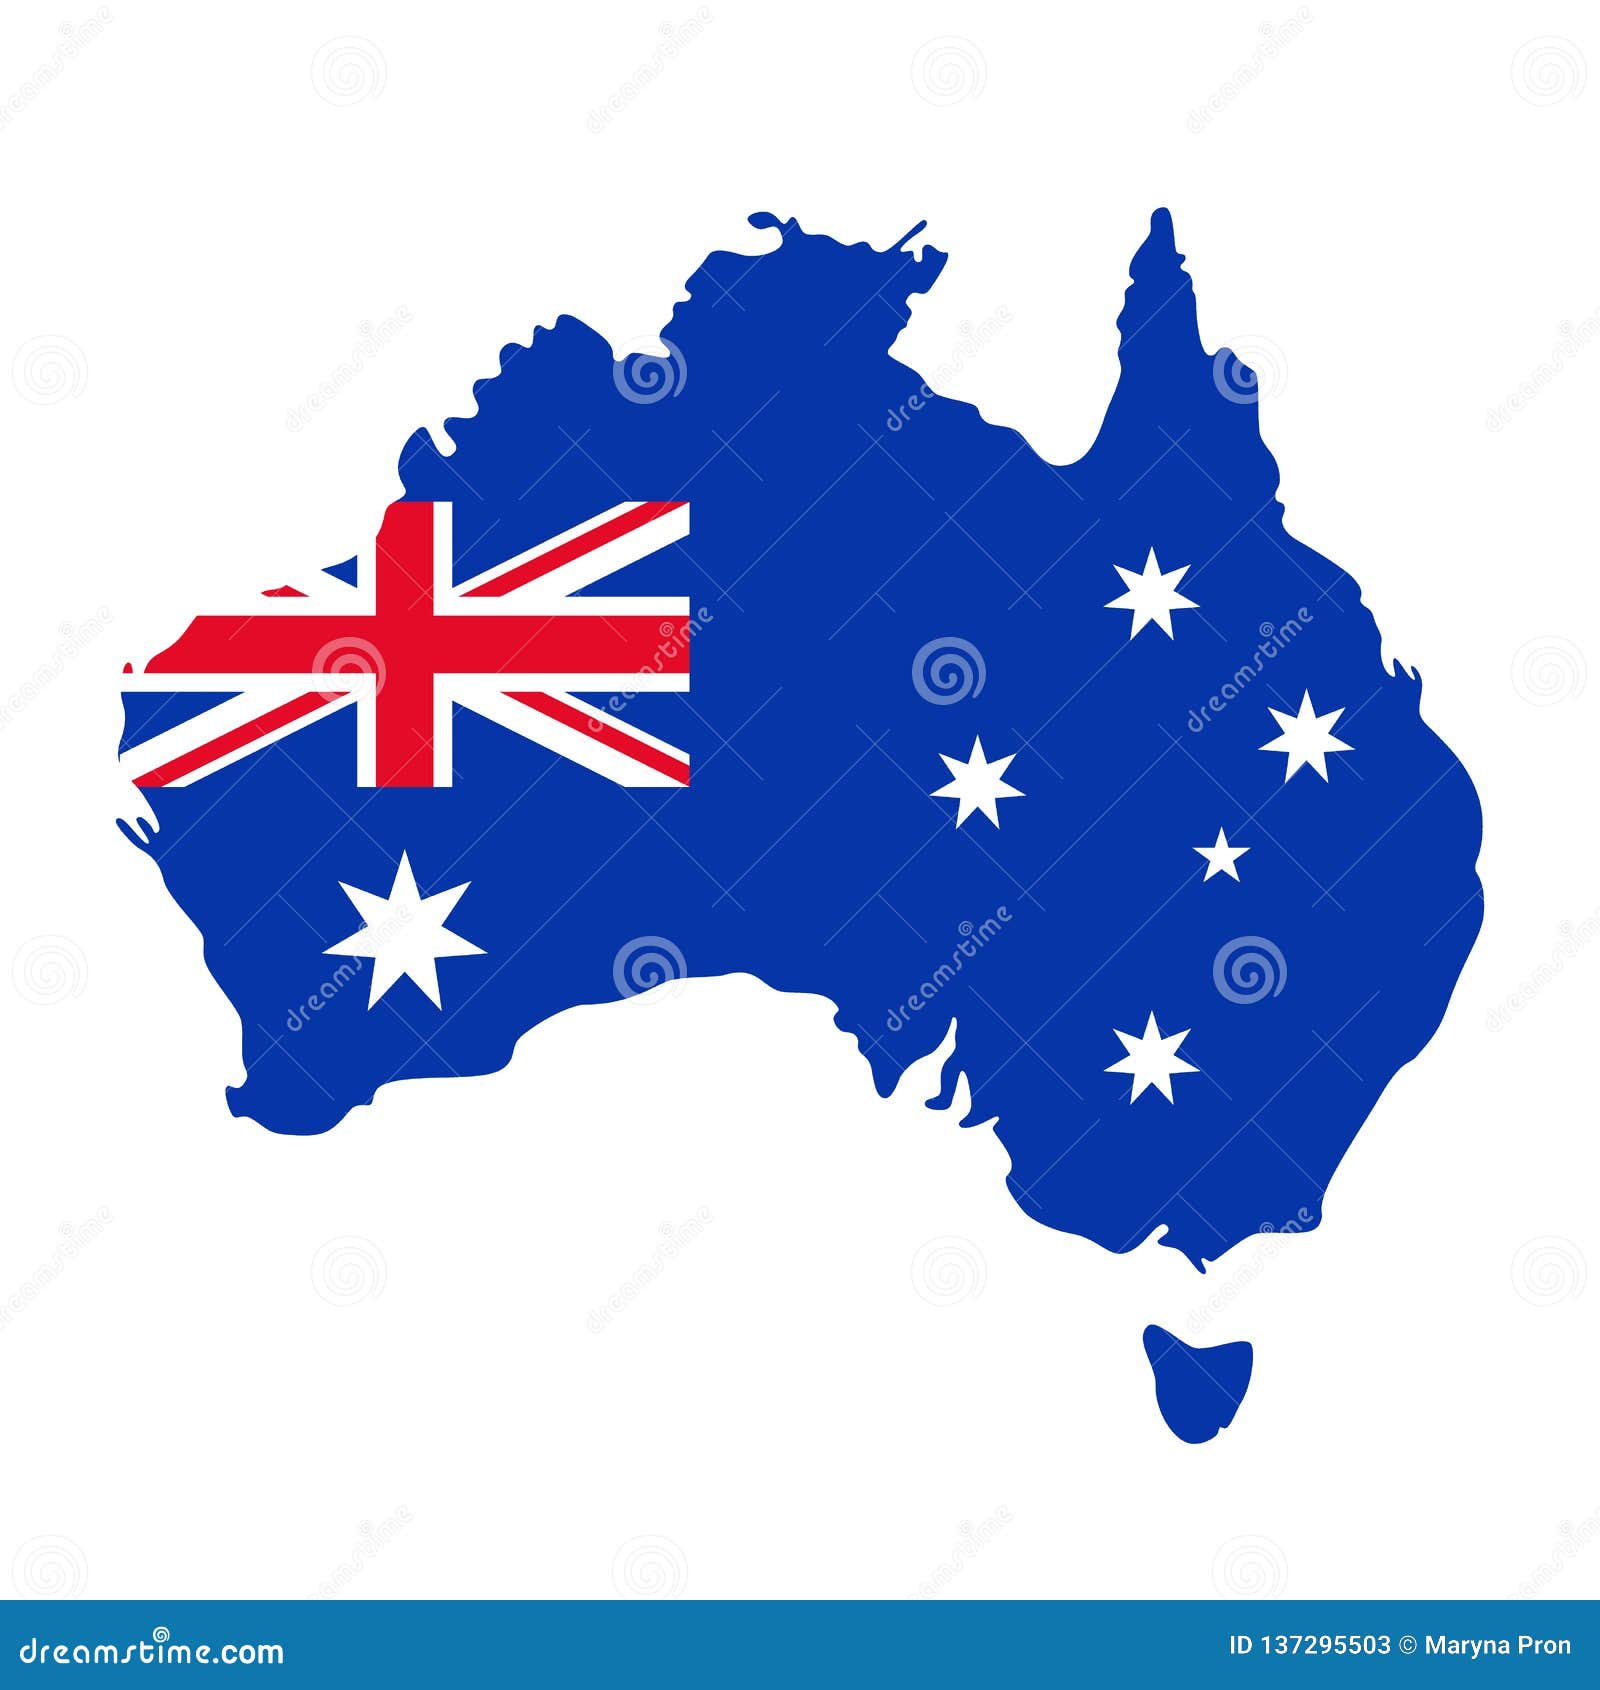 Lá cờ của đất nước Australia không chỉ đơn thuần là một lá cờ thông thường, nó còn là biểu tượng tuyệt vời của sự đa dạng văn hóa, thiên nhiên và cuộc sống đầy màu sắc. Hãy nhấp chuột vào hình ảnh này để khám phá ra cảnh đẹp tuyệt vời của đất nước kangaroo.